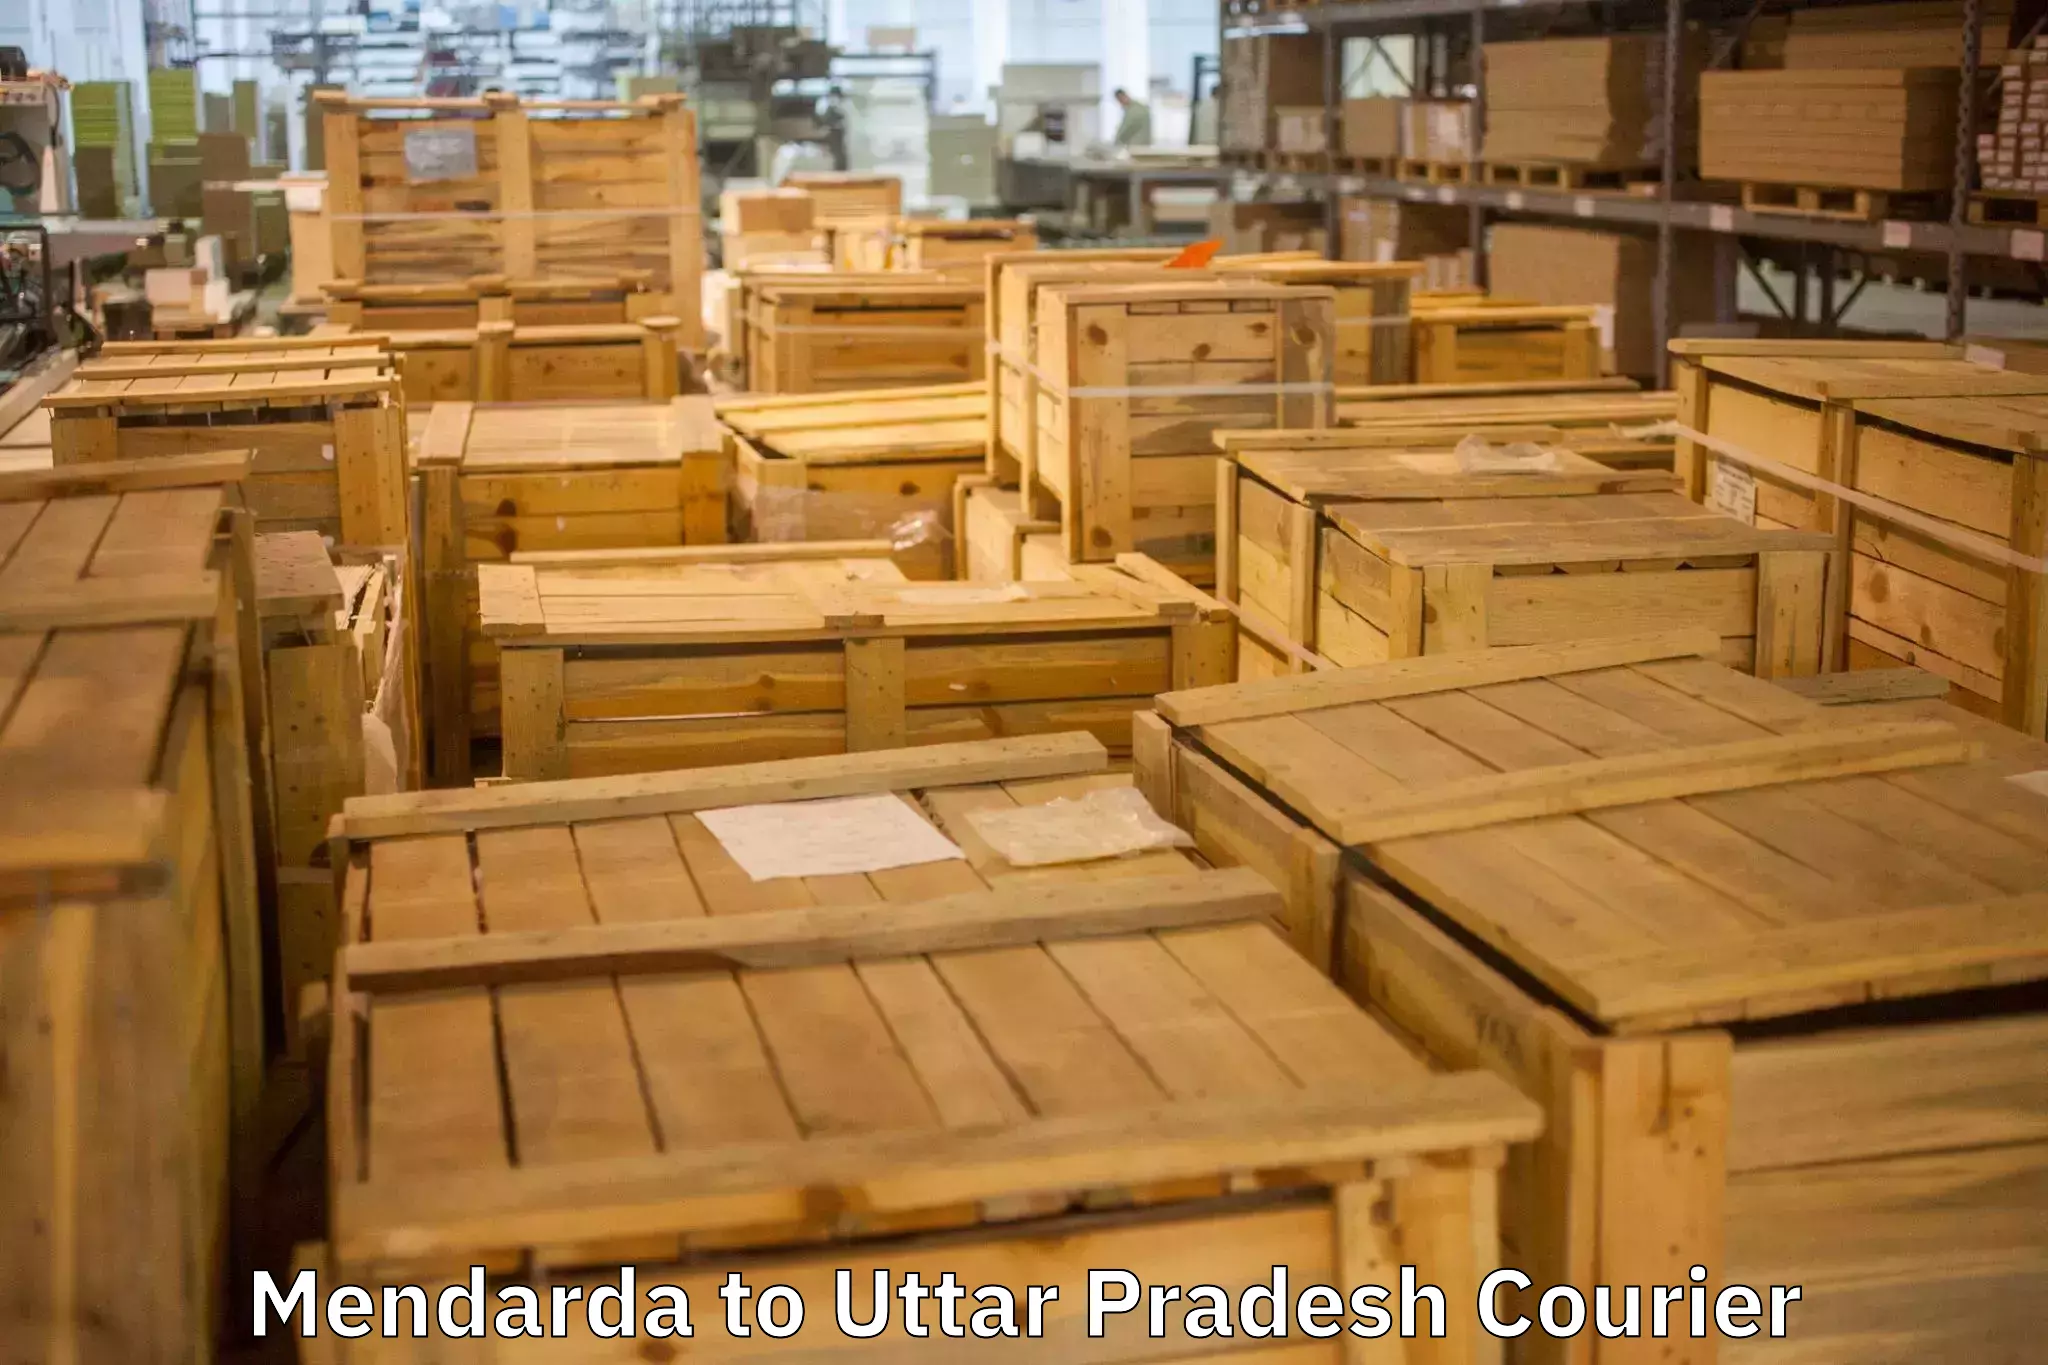 Furniture transport company in Mendarda to Madhoganj